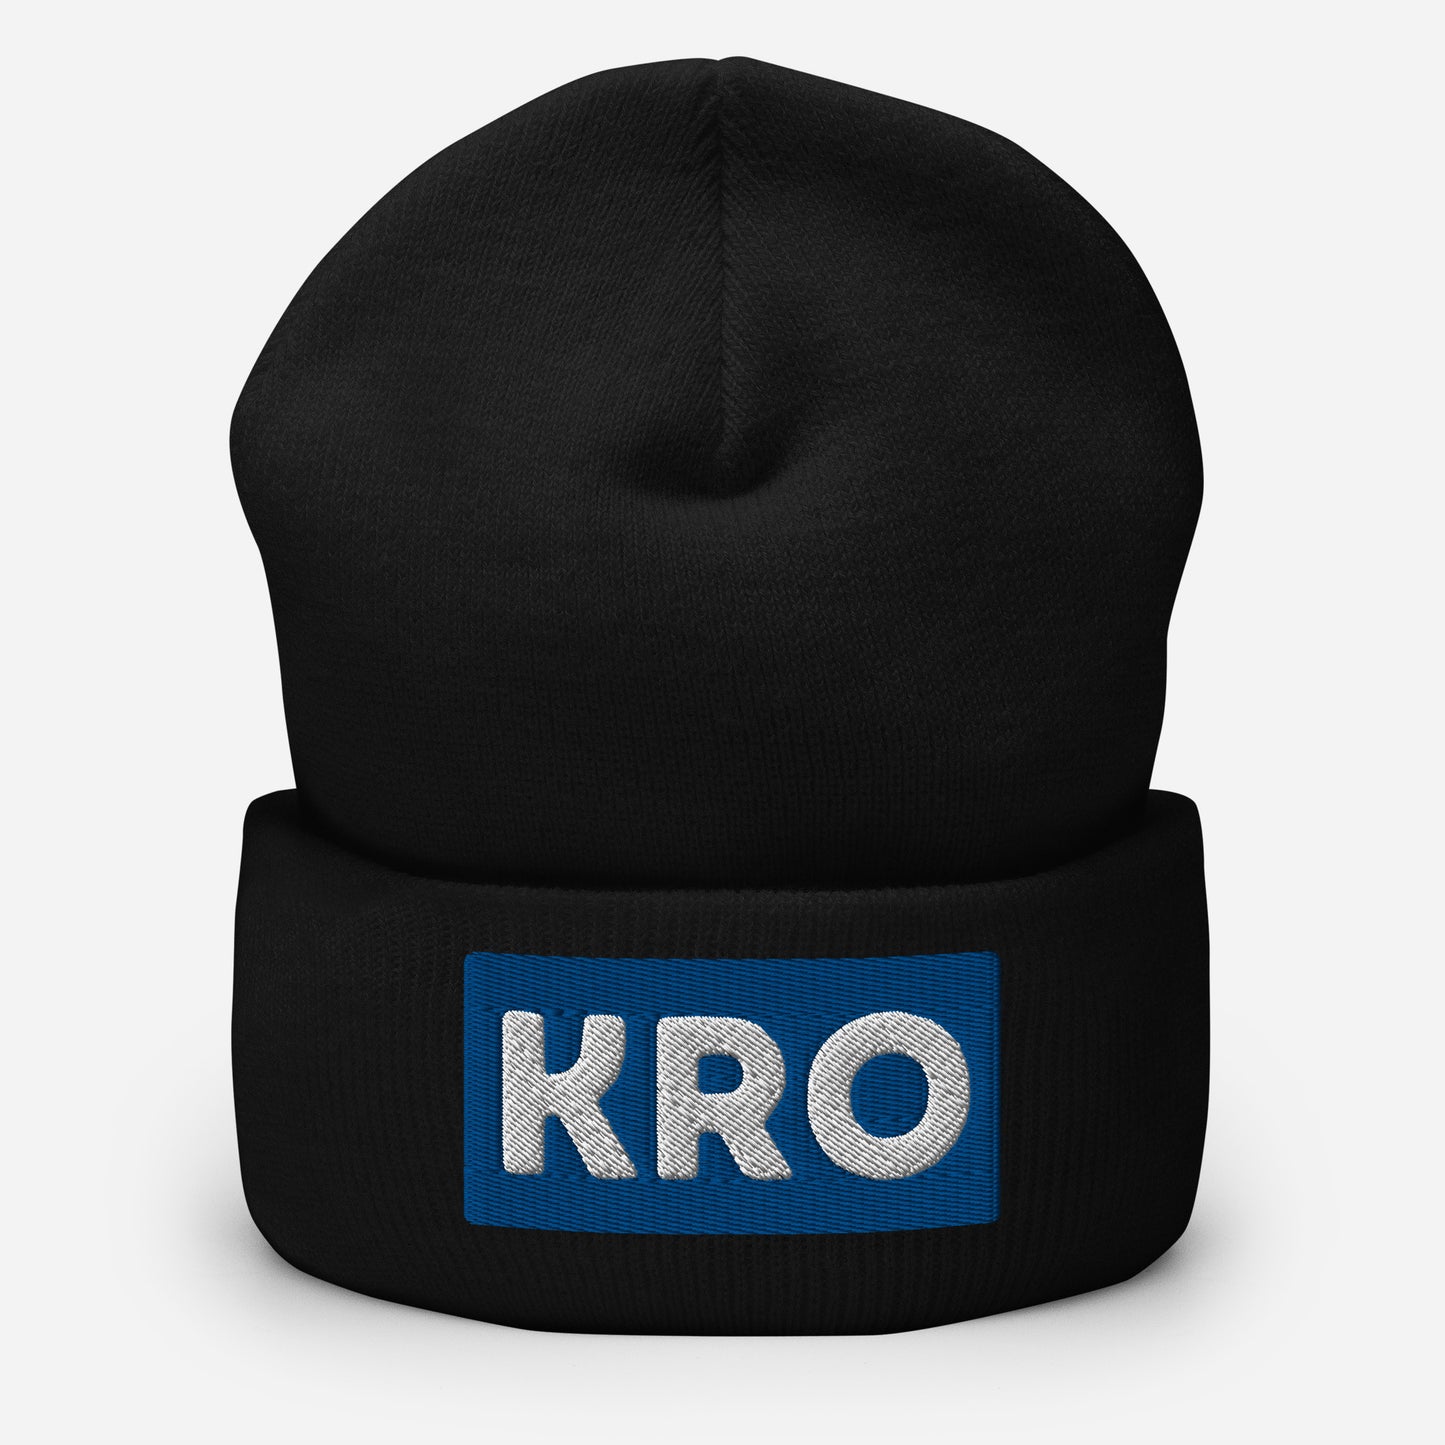 KRO Cuffed Beanie Hat